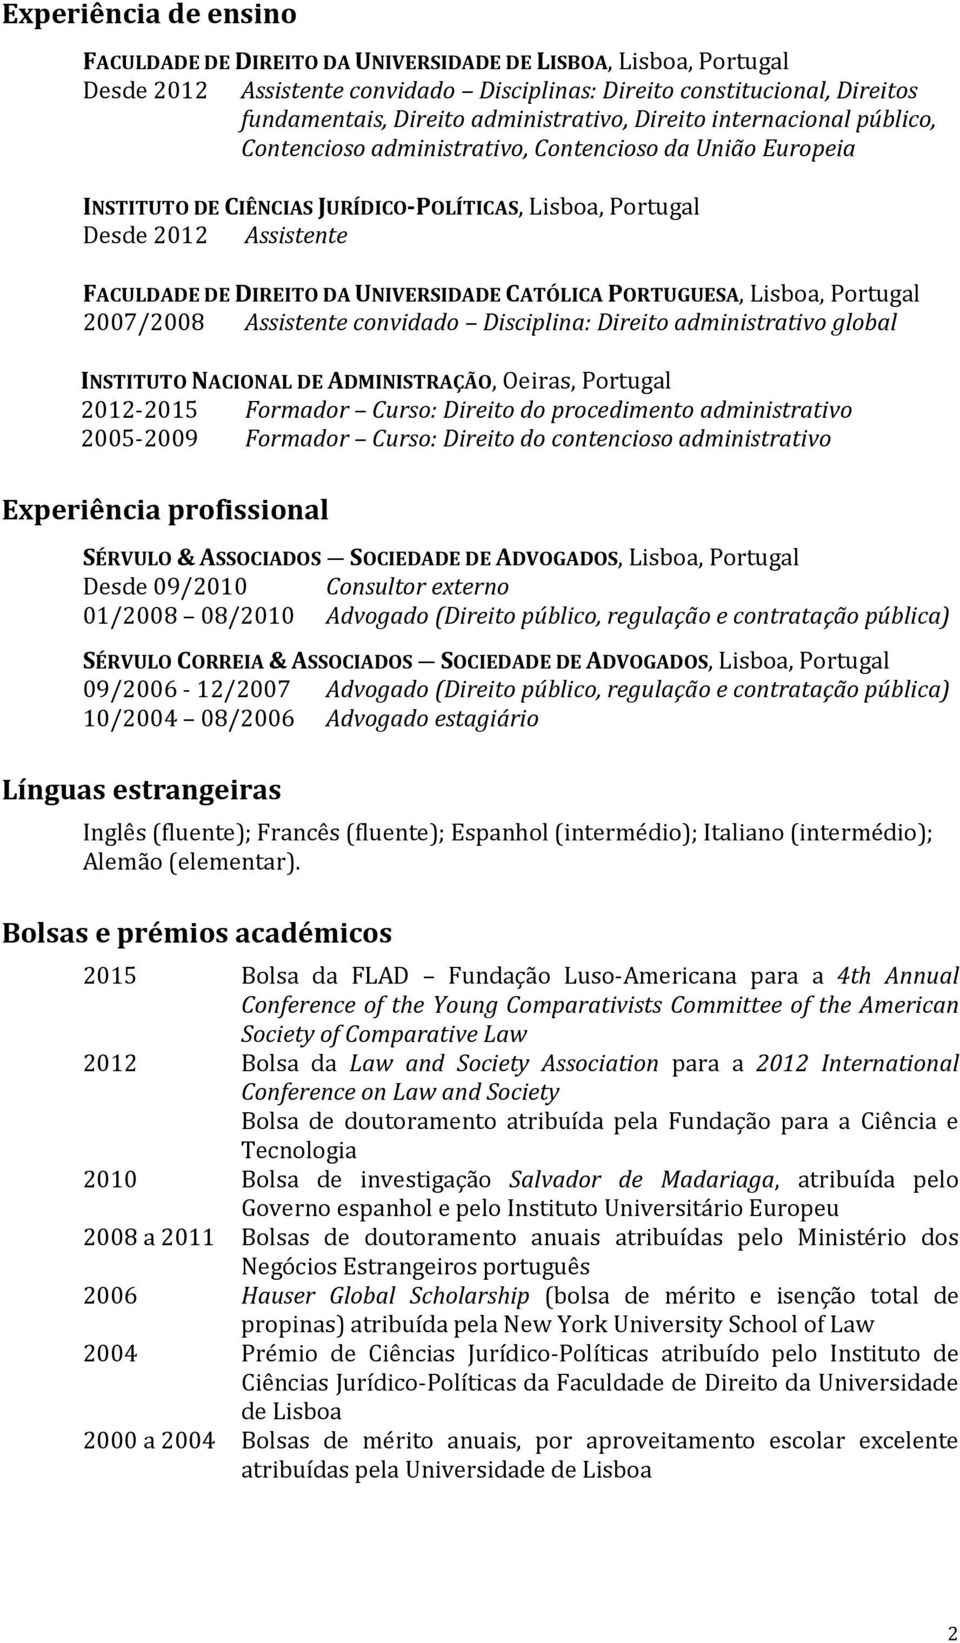 DIREITO DA UNIVERSIDADE CATÓLICA PORTUGUESA, Lisboa, Portugal 2007/2008 Assistente convidado Disciplina: Direito administrativo global INSTITUTO NACIONAL DE ADMINISTRAÇÃO, Oeiras, Portugal 2012-2015